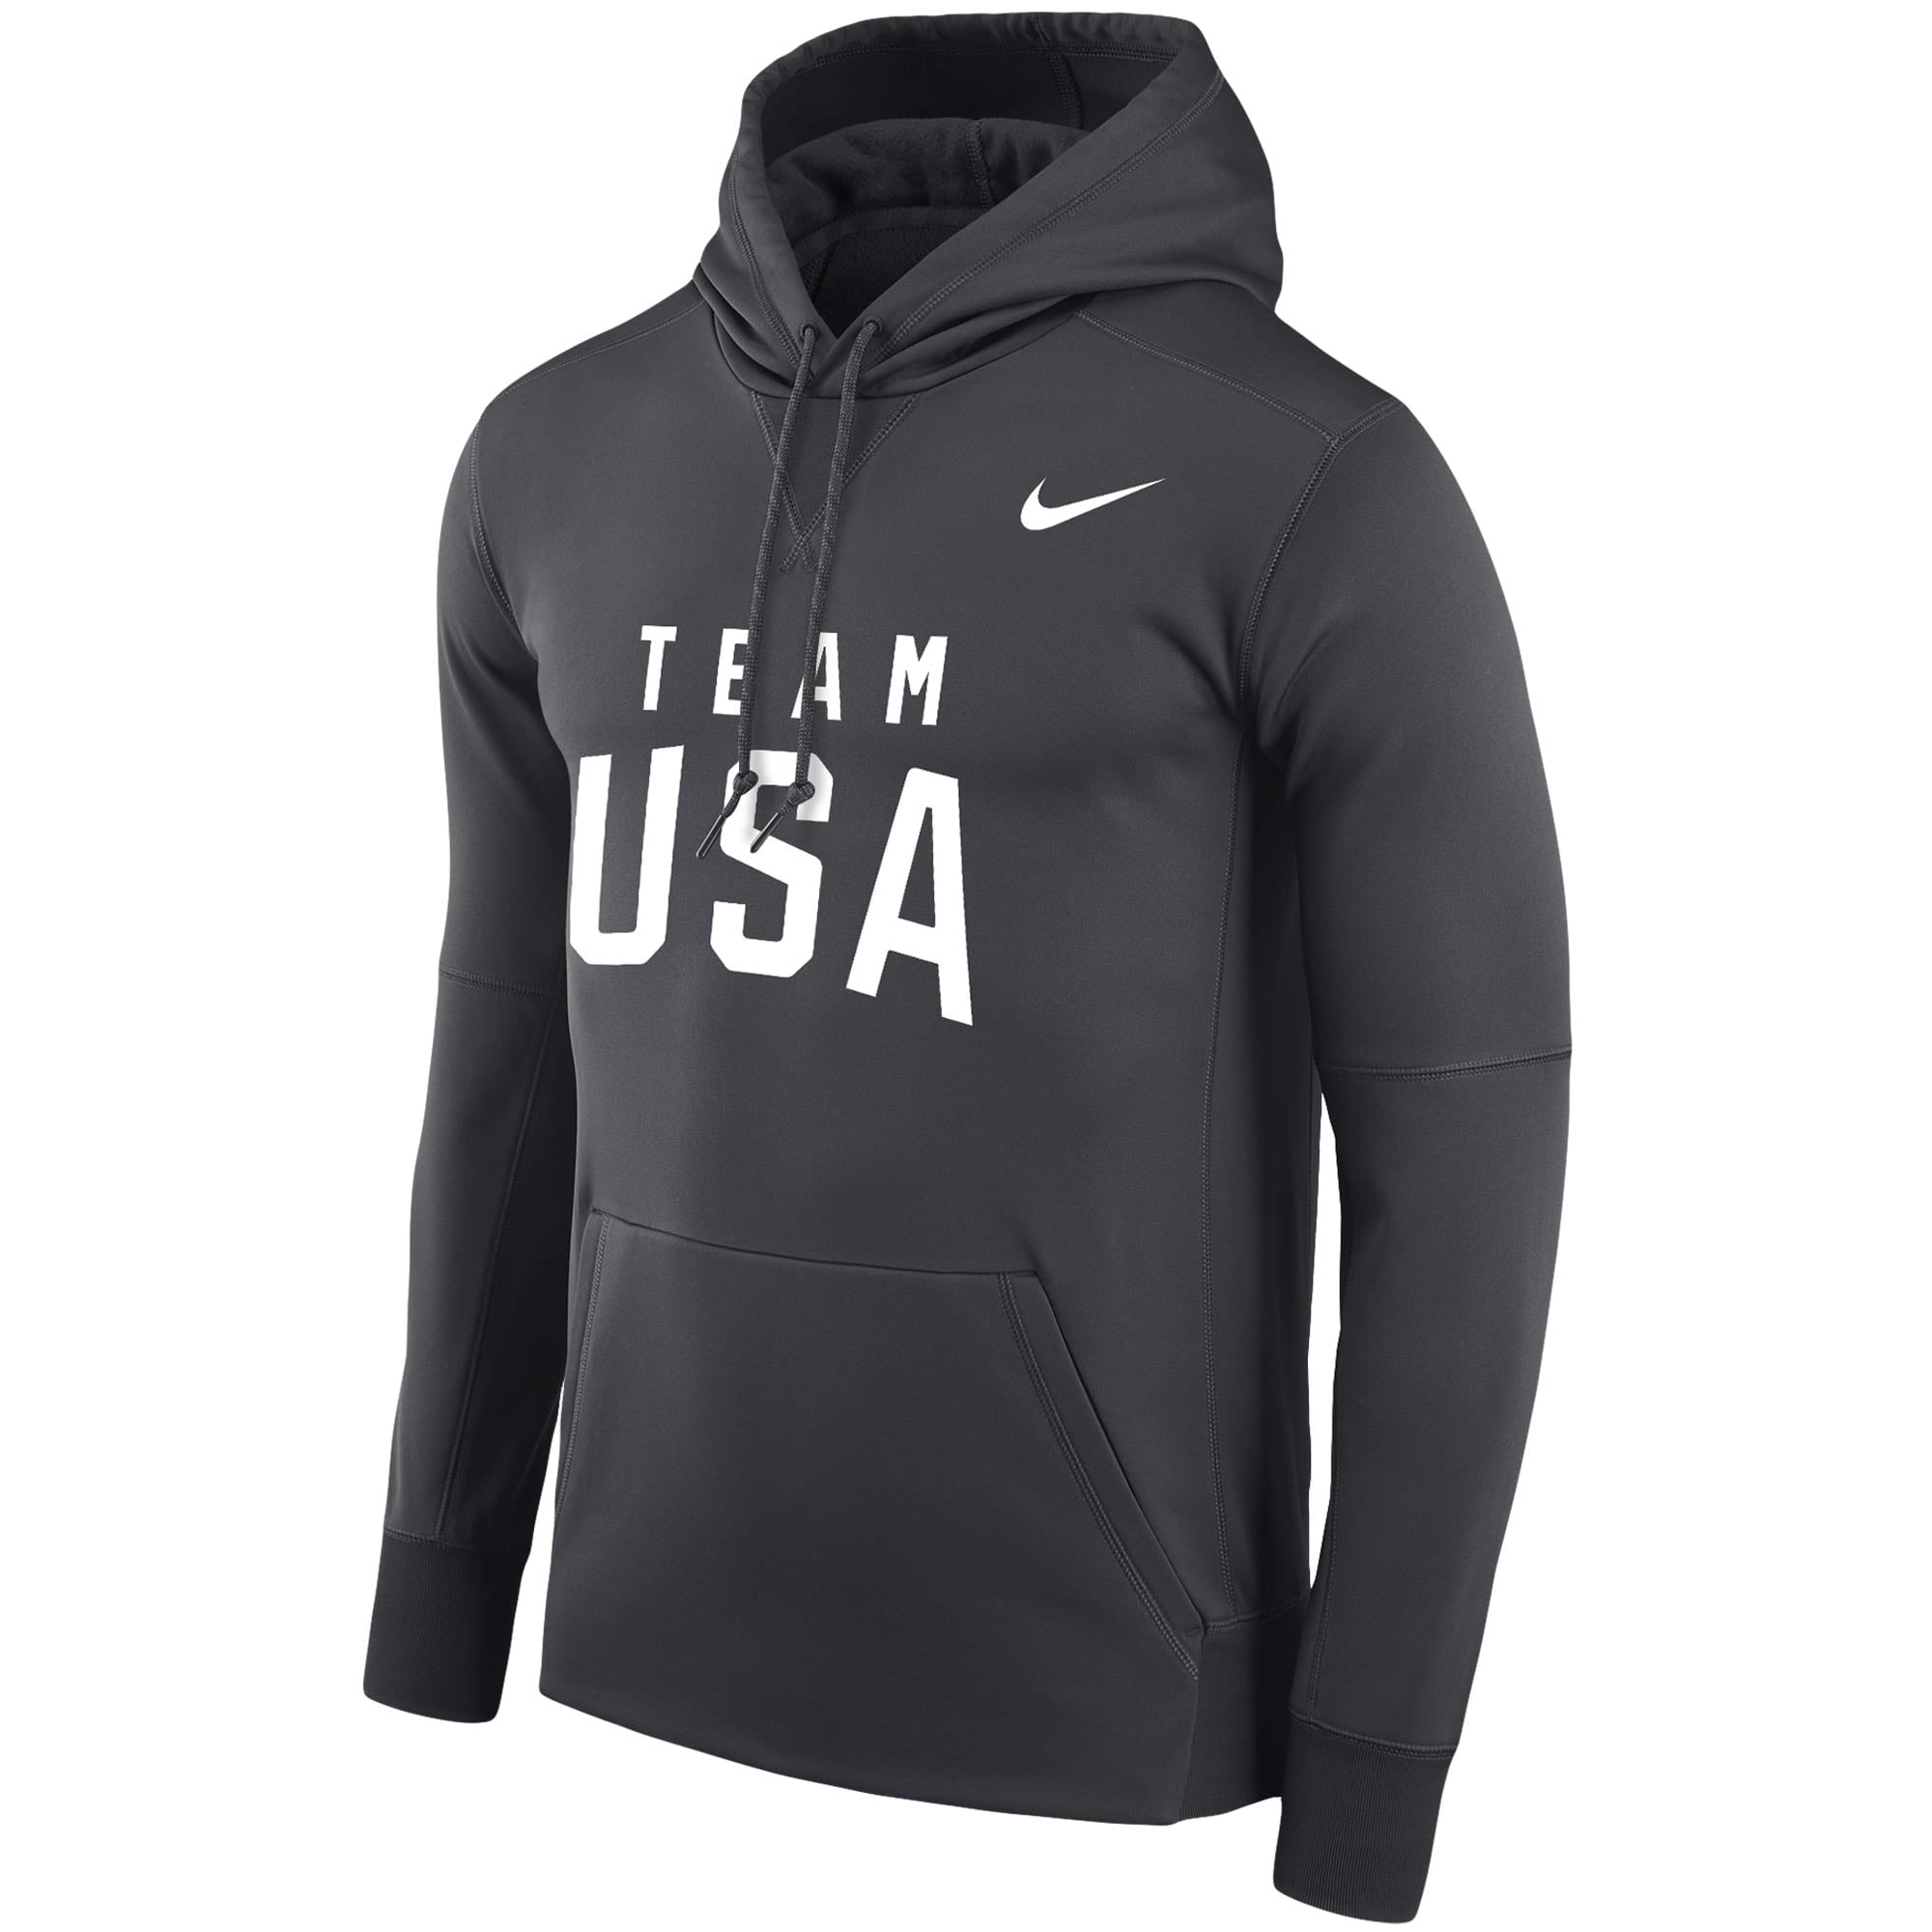 Team USA Nike Wordmark Performance 